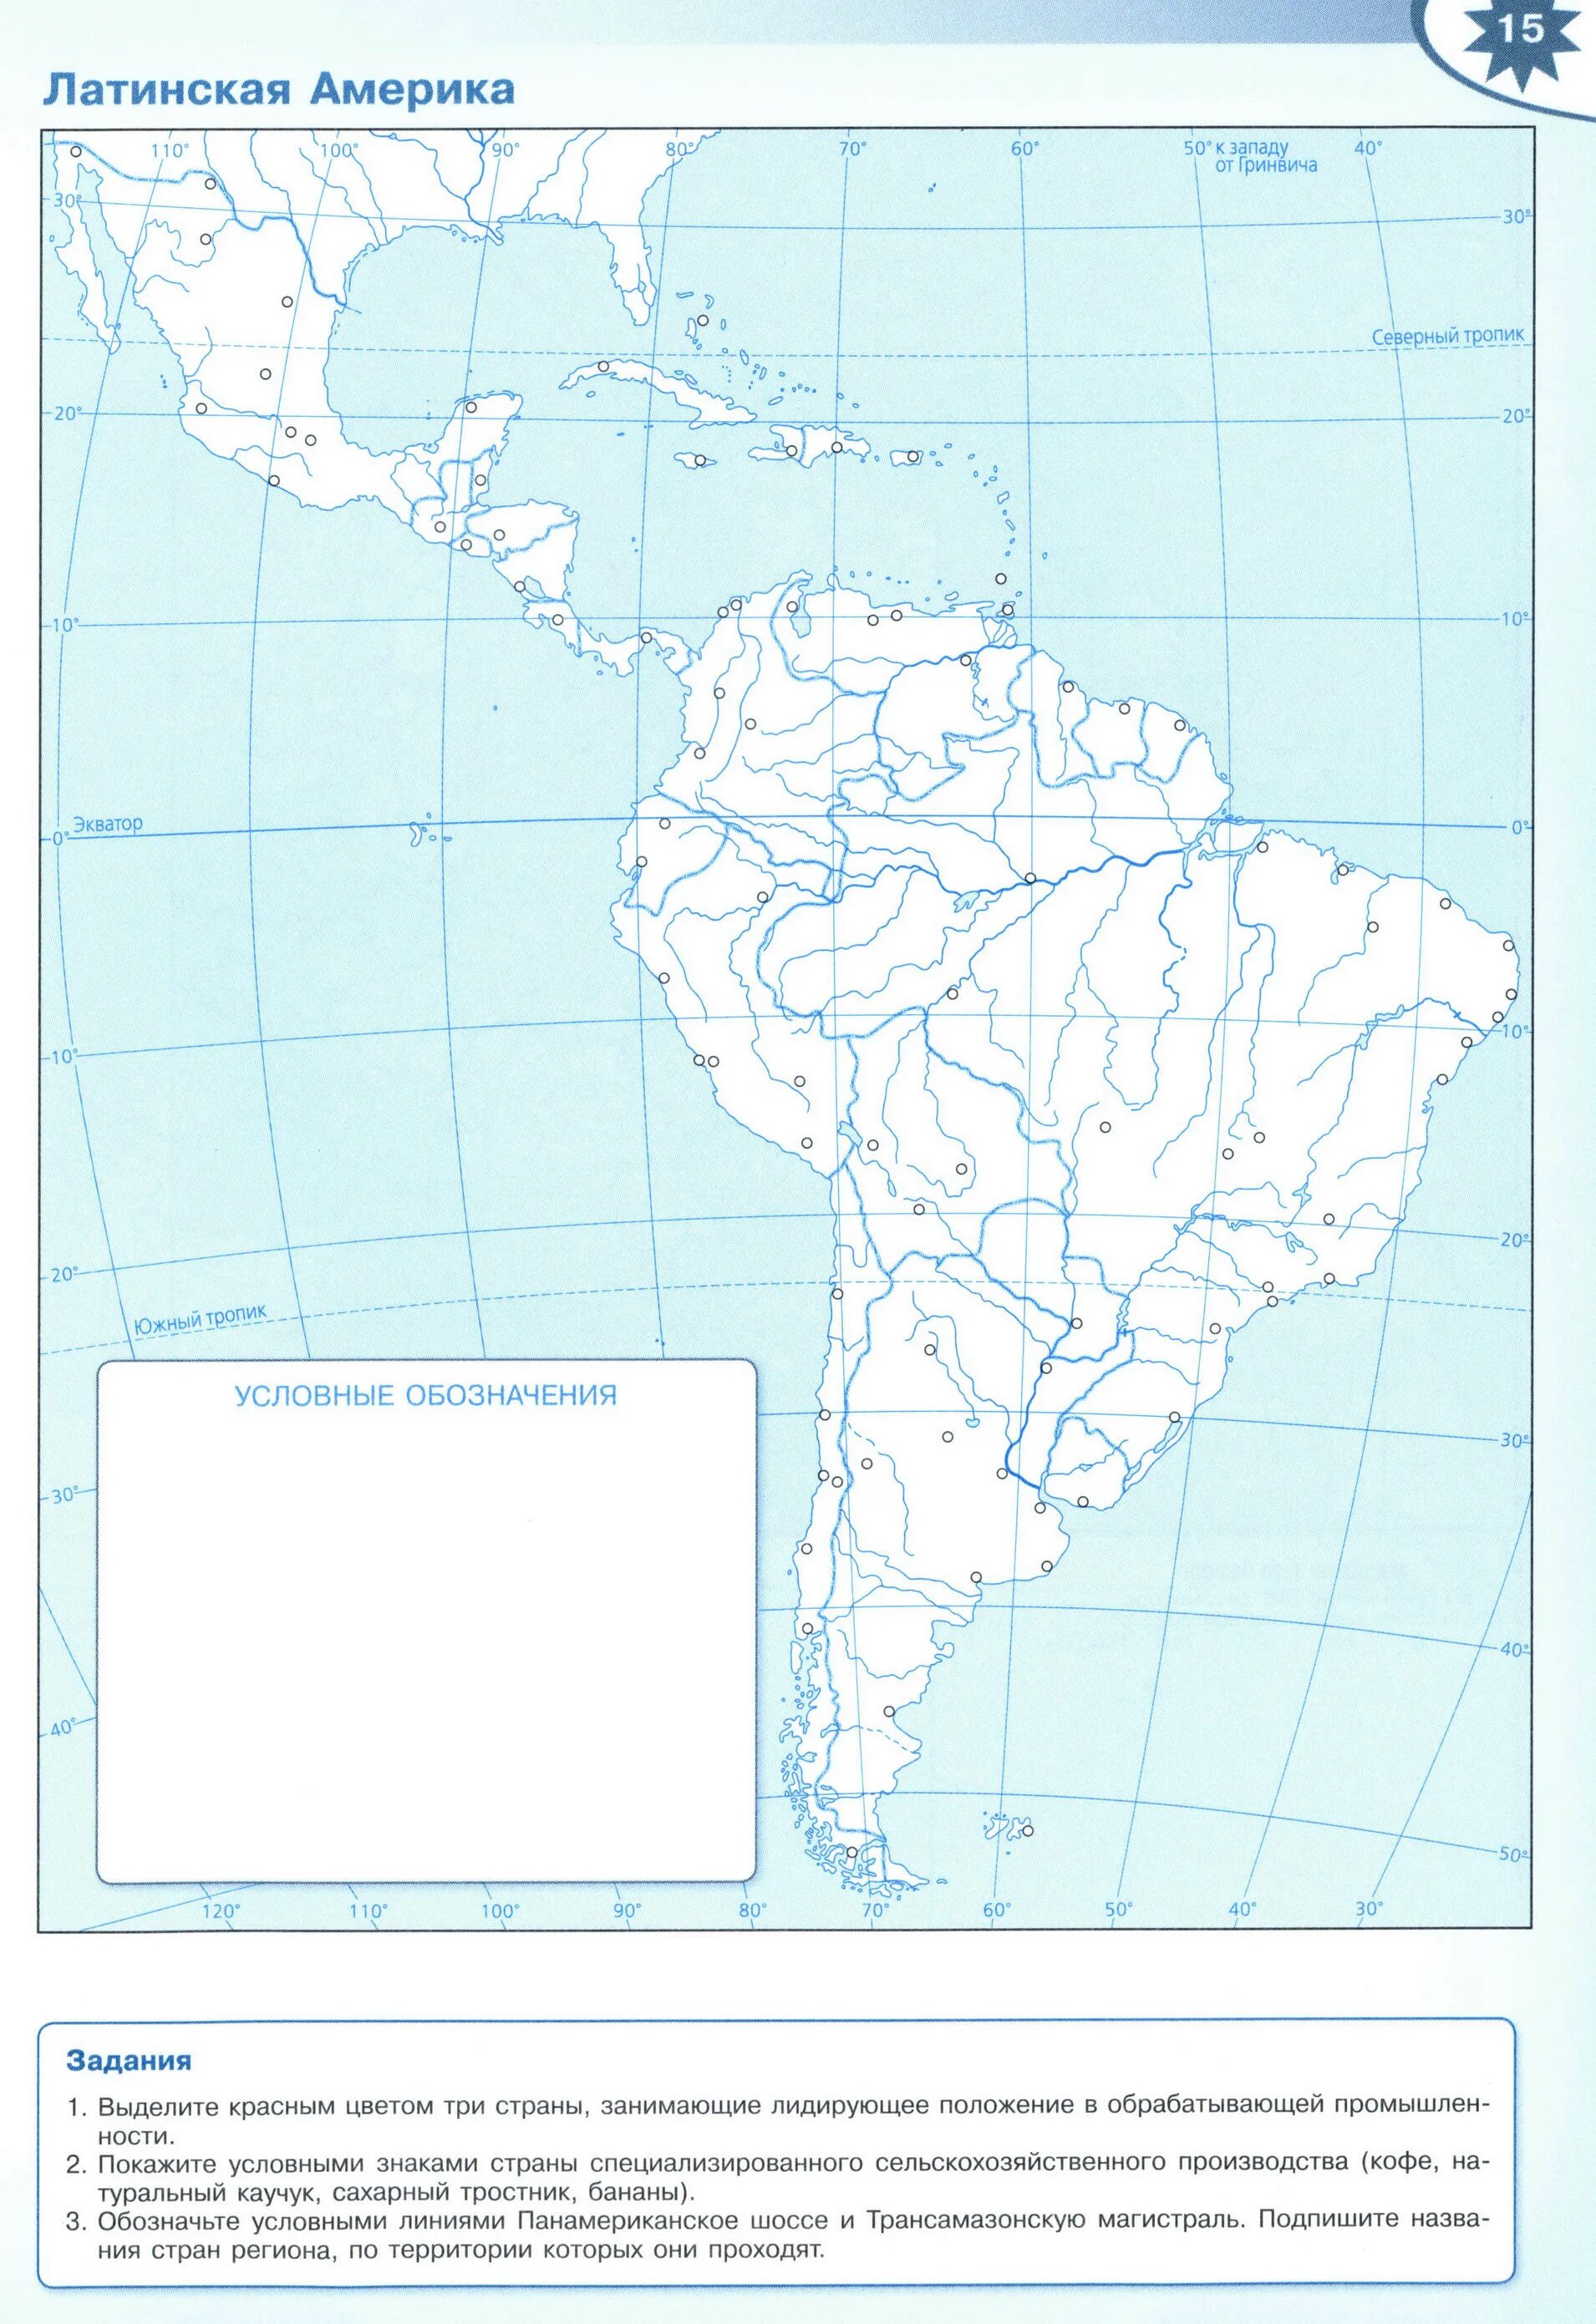 Контурные карты просвещение южная америка